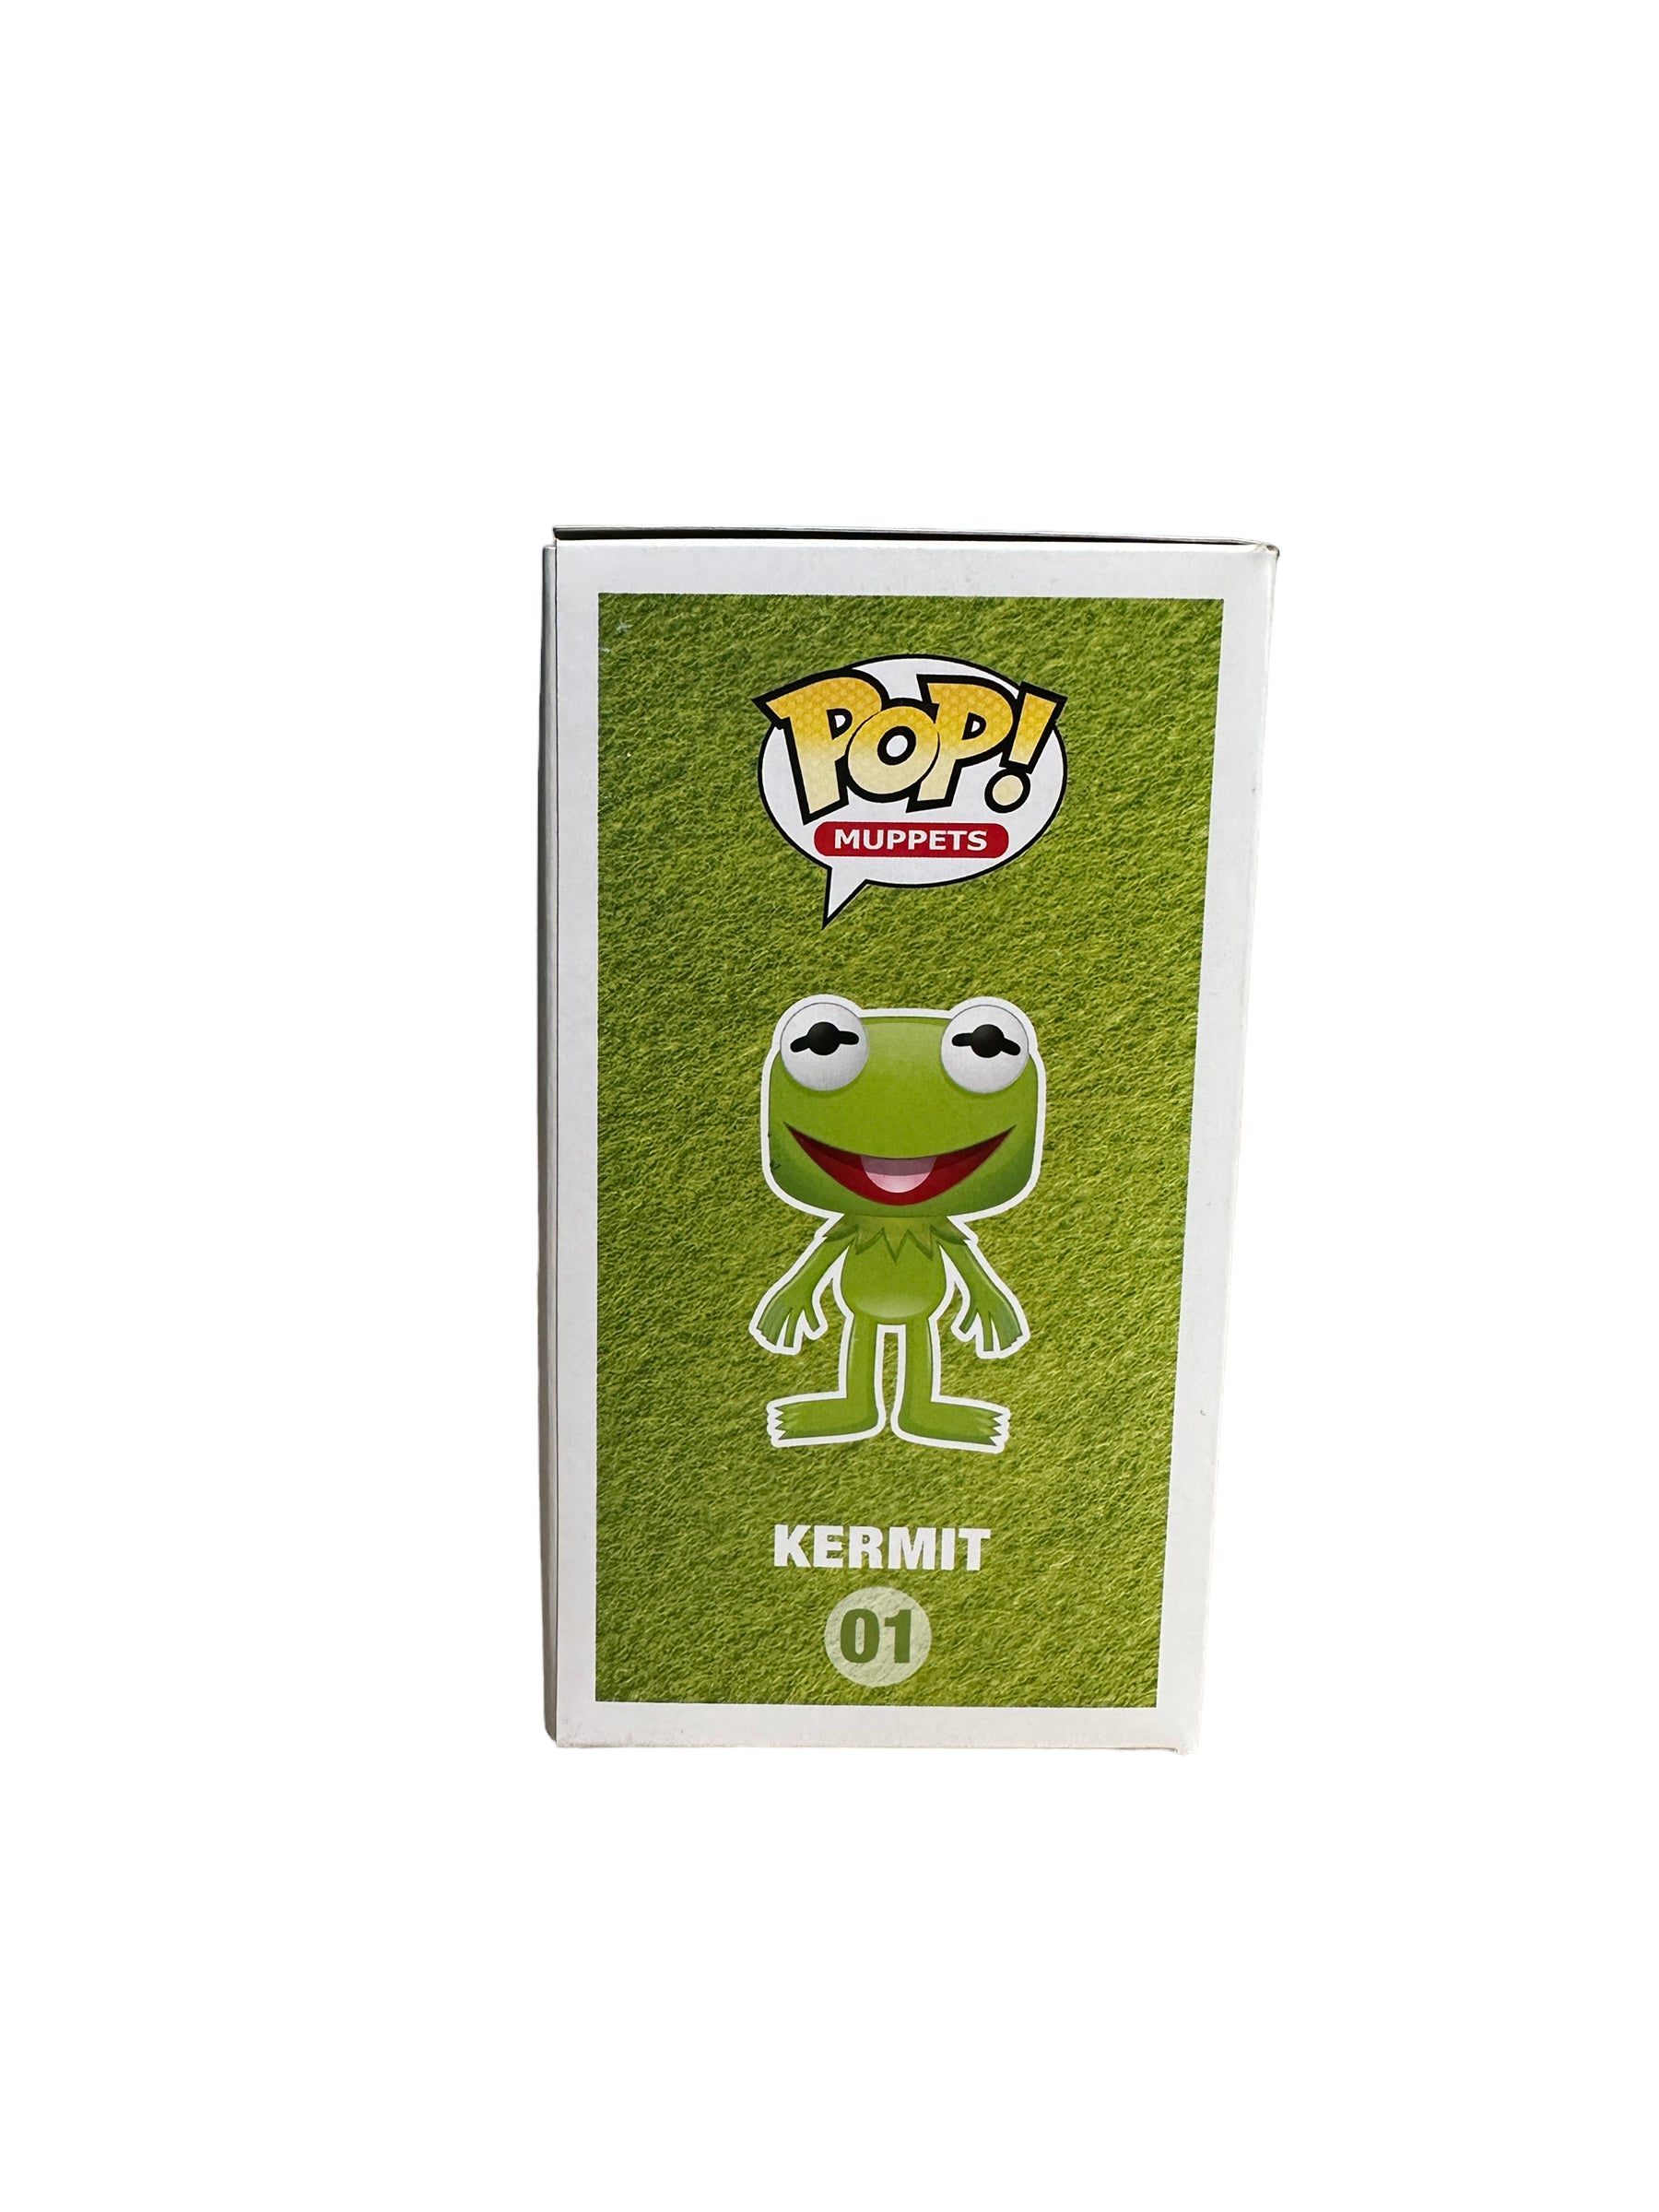 Kermit #01 (Metallic) Funko Pop! - The Muppets - SDCC 2013 Exclusive LE480 Pcs - Condition 8/10